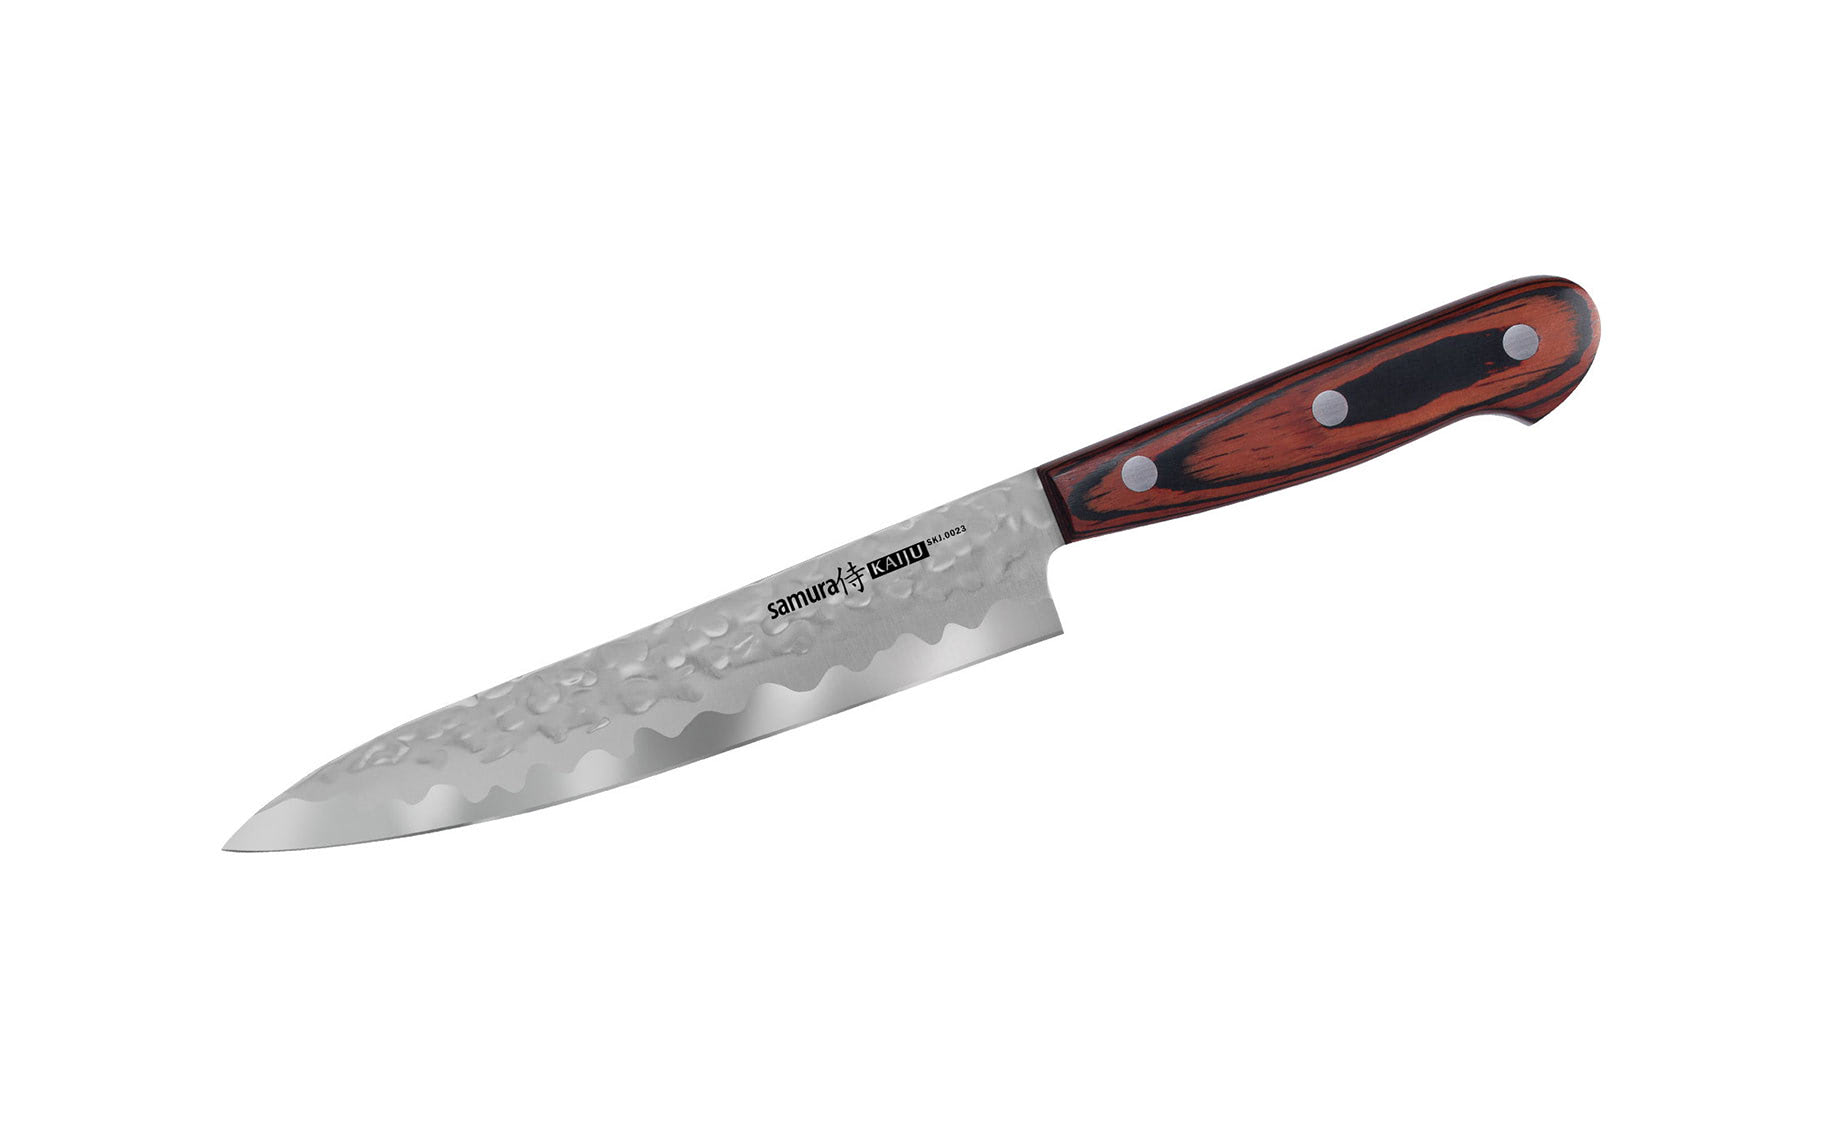 Samura Kaiju Utility nož 15cm